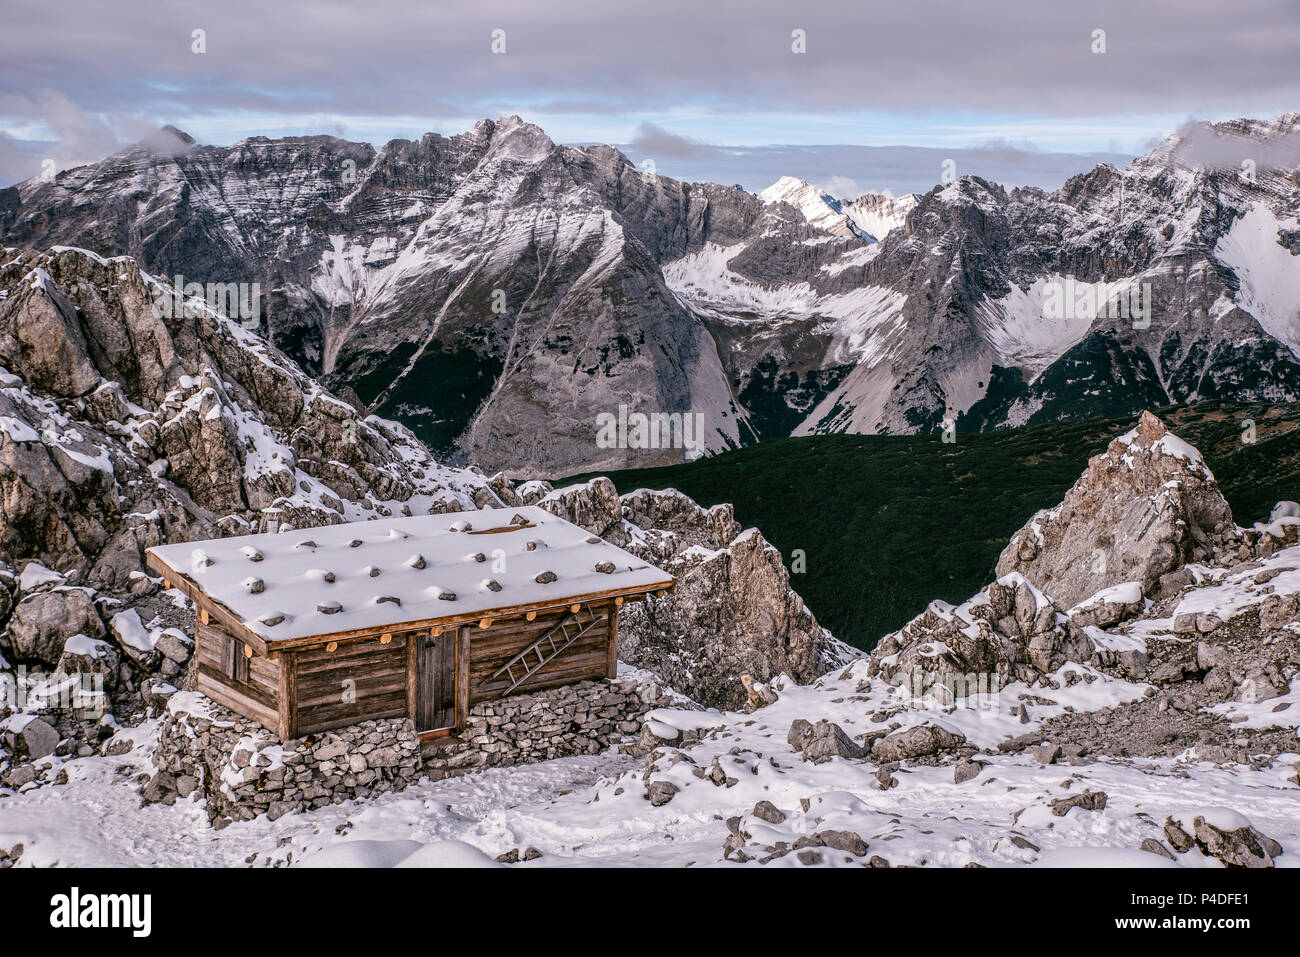 Un refuge de montagne dans les Alpes de l'Autriche à une saison d'hiver dans la neige. Hafelekarspitze - Seegrube à la montagne du Karwendel, Innsbruck, Autriche, Europe Banque D'Images